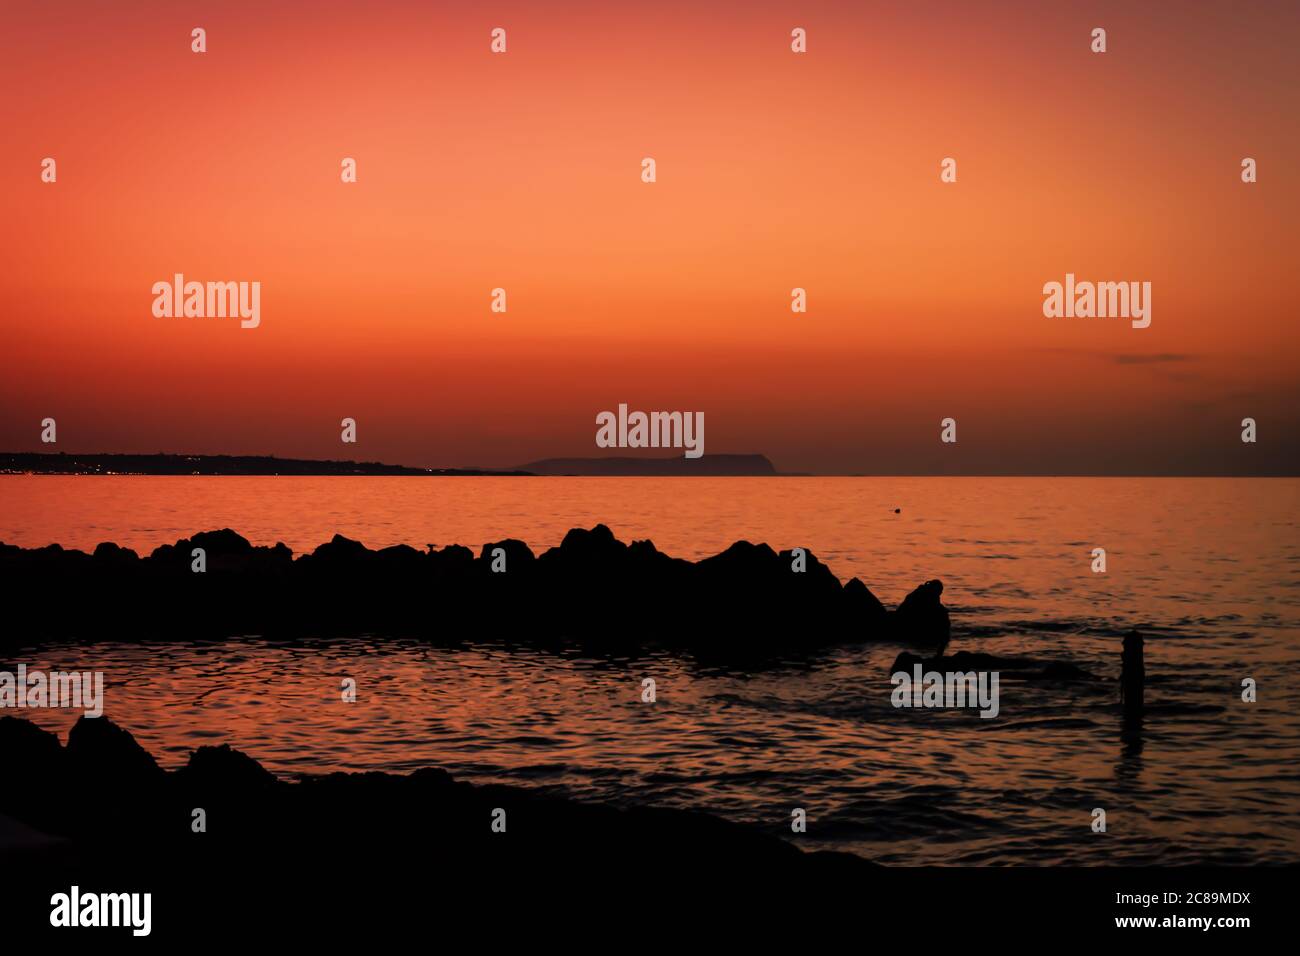 Skyline dopo il tramonto. Scenario di cielo arancione con silhouette rocciose e onde oceaniche. Tramonto arancione durante la fotografia costiera. Waterfront tranquillità in p Foto Stock